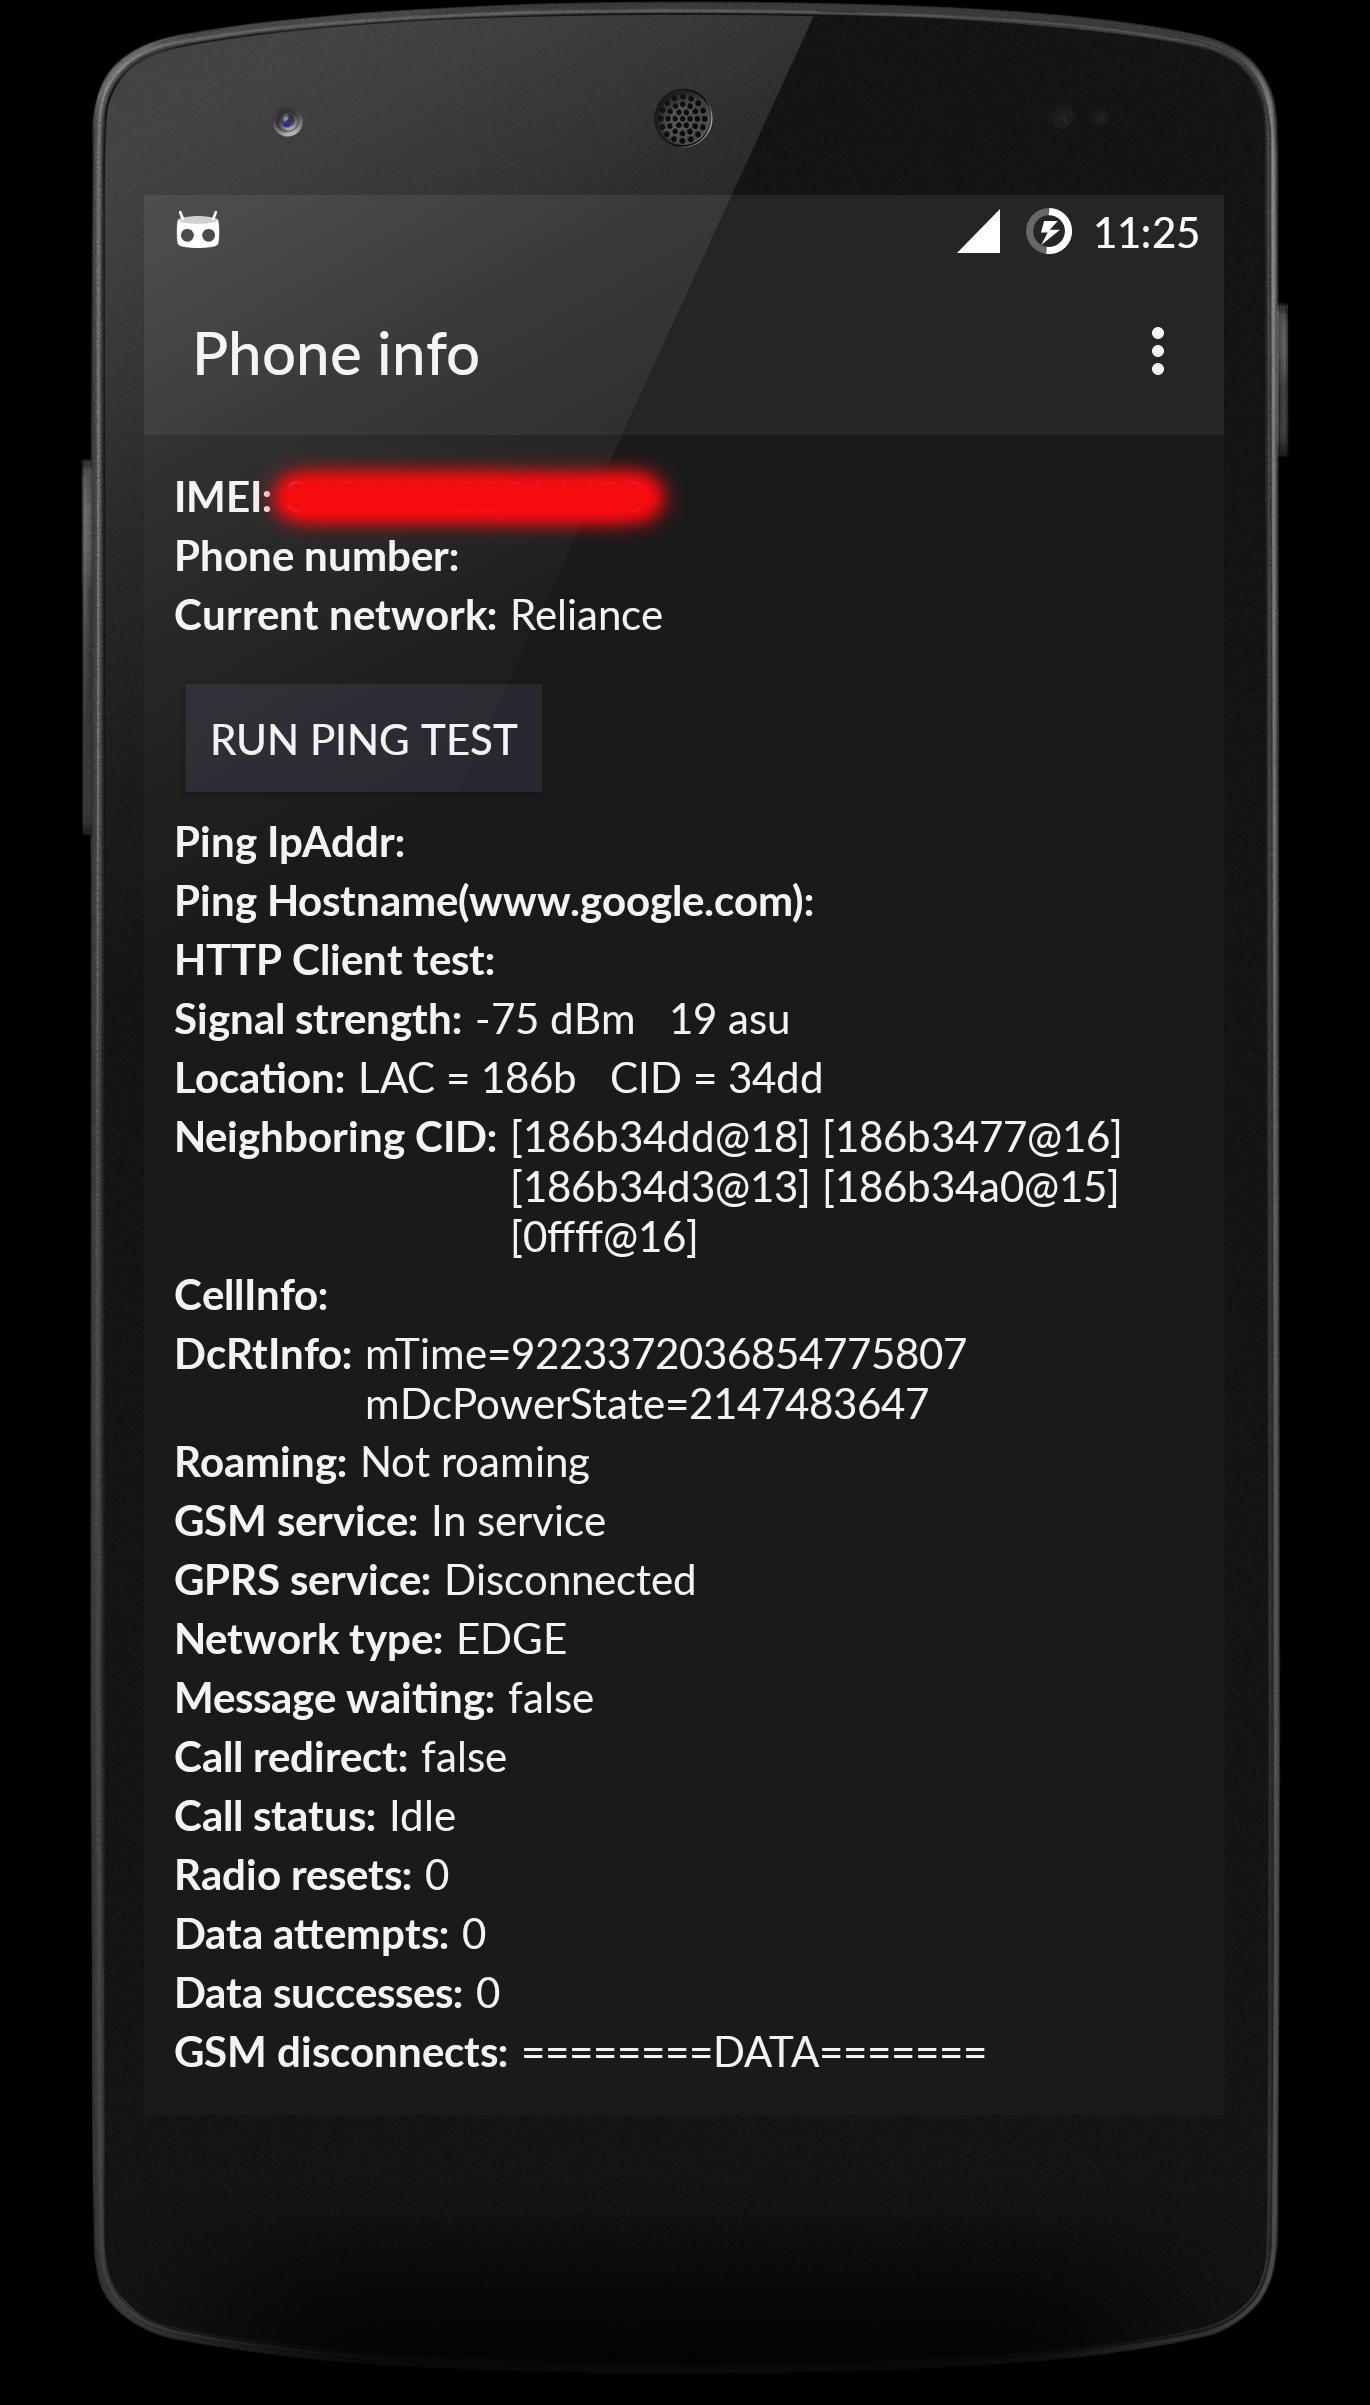 Secret Codes Hack fÃ¼r Android - APK herunterladen - 